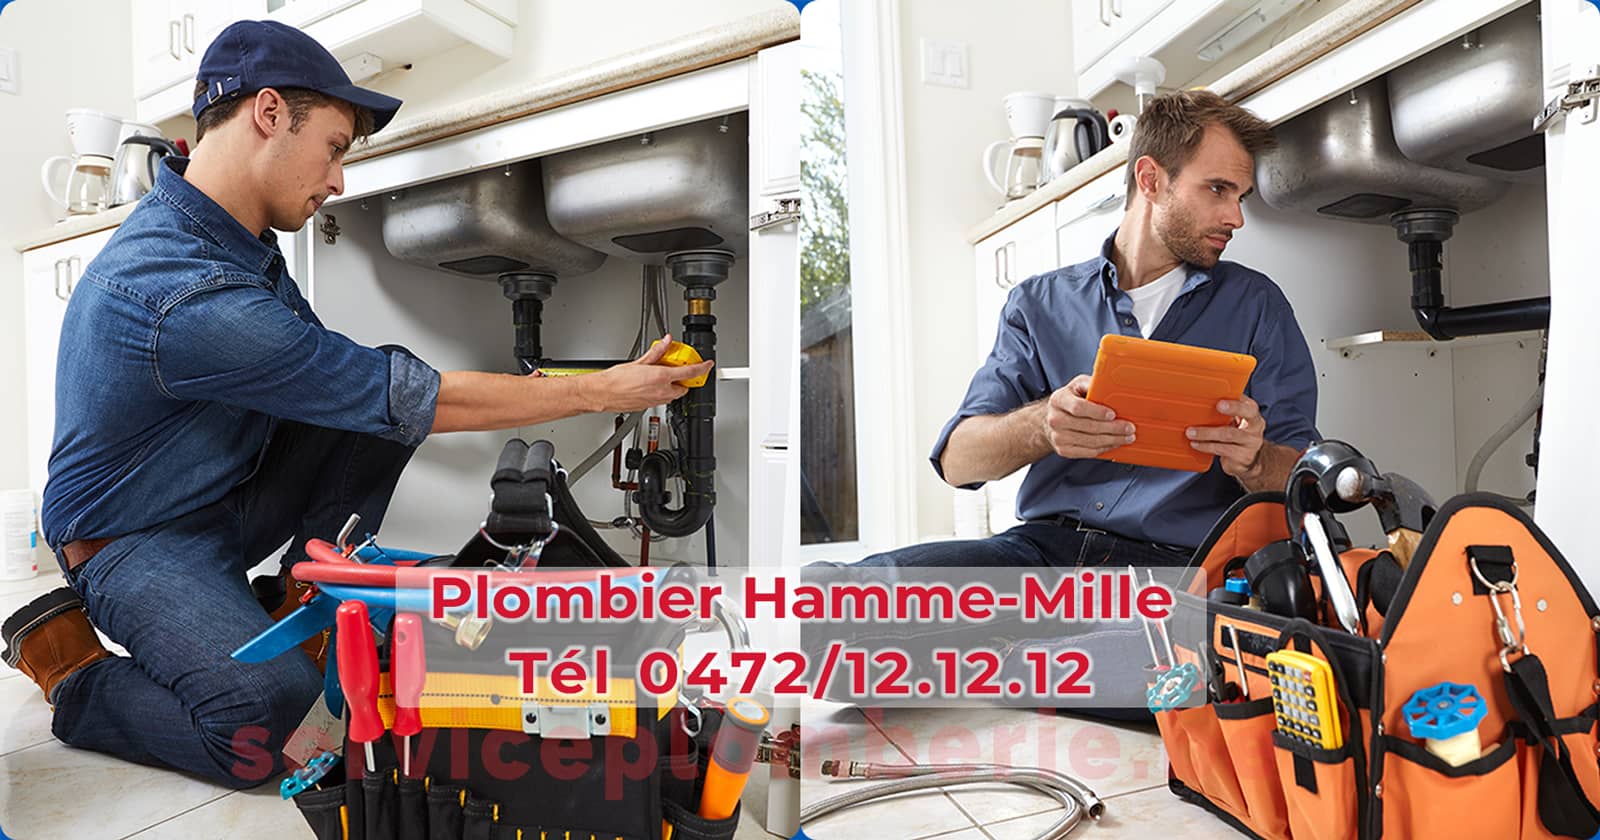 Plombier Hamme-Mille Agréé Professionnel Service Plomberie Tél 0472/12.12.12